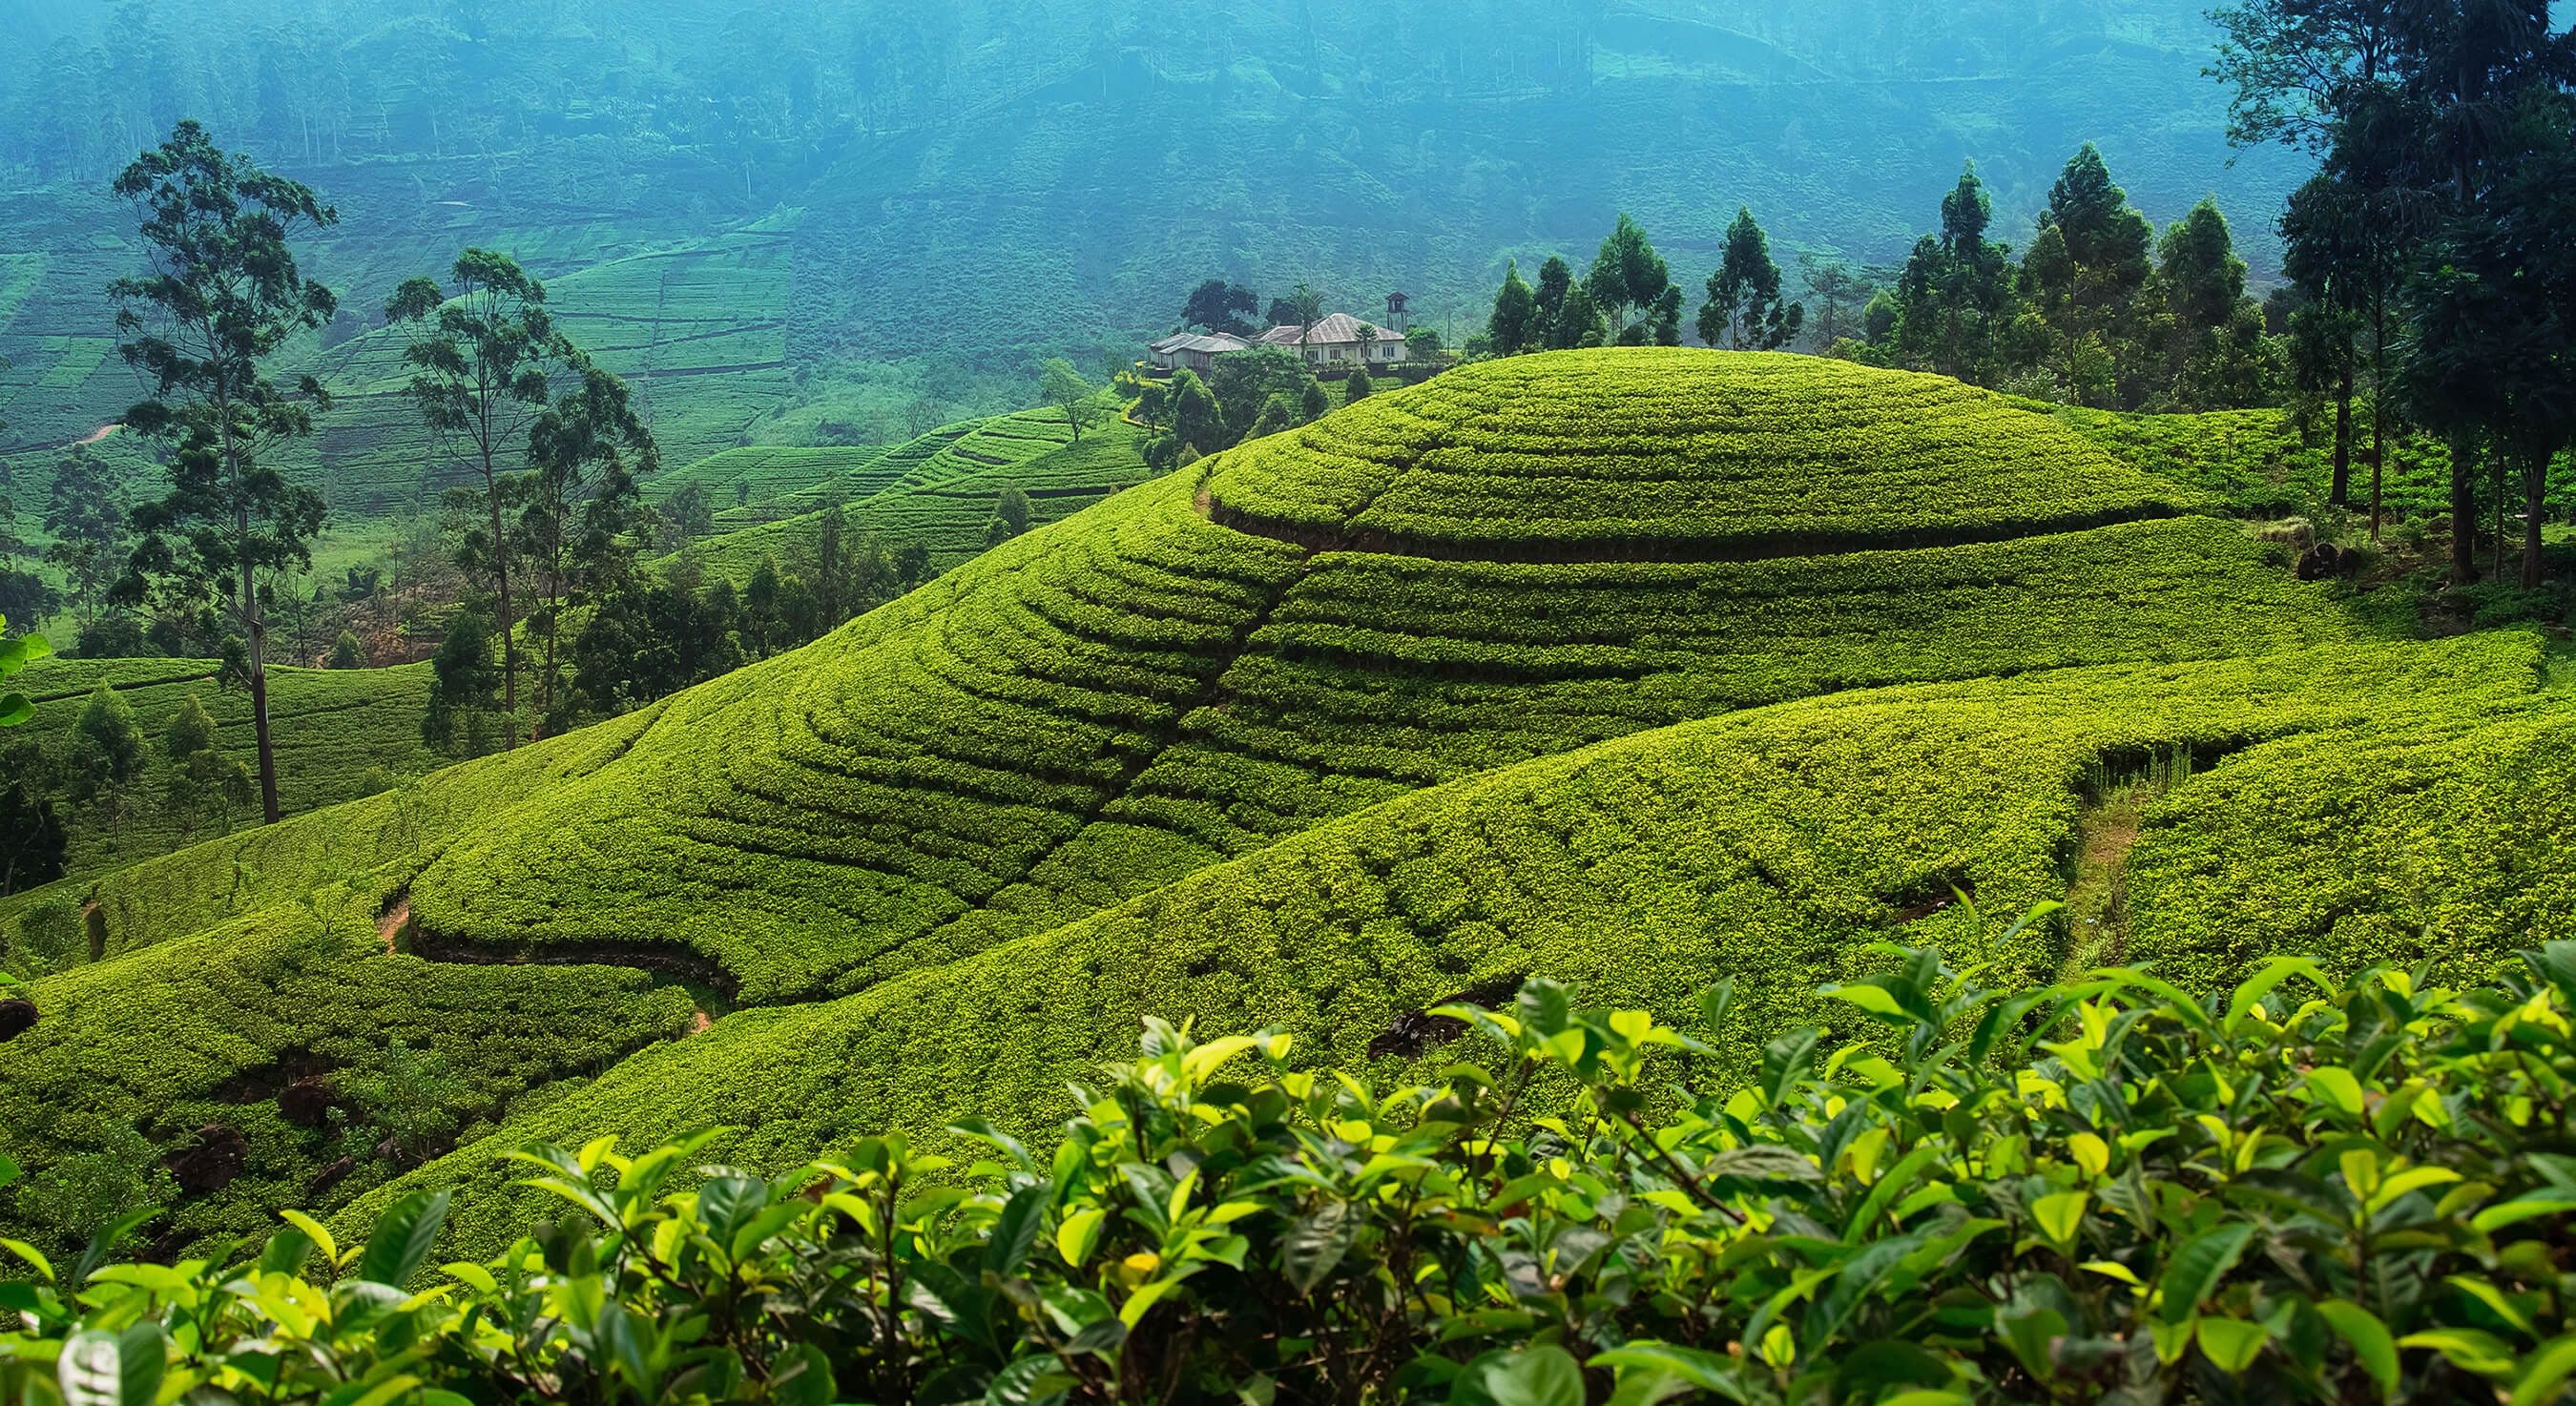 Tea plantation in up country near Nuwara Eliya, Sri Lanka.